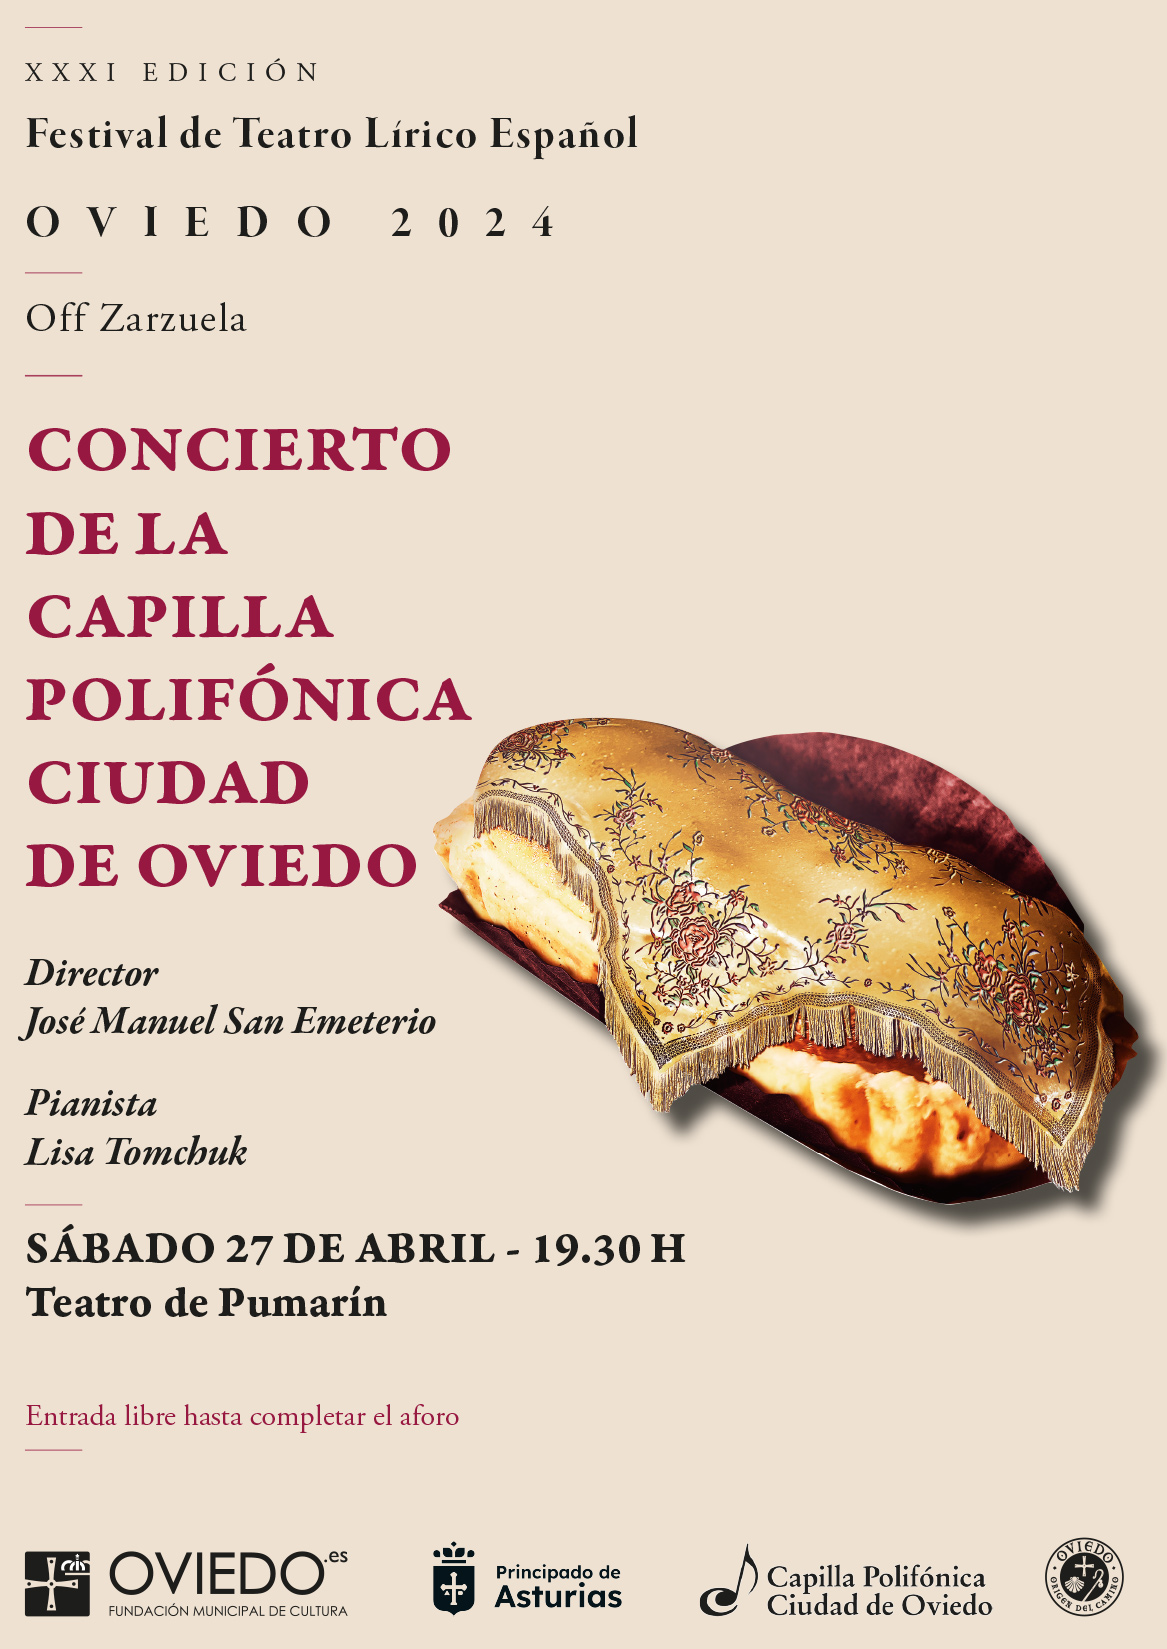 OFF ZARZUELA - Concierto de la Capilla Polifónica Ciudad de Oviedo